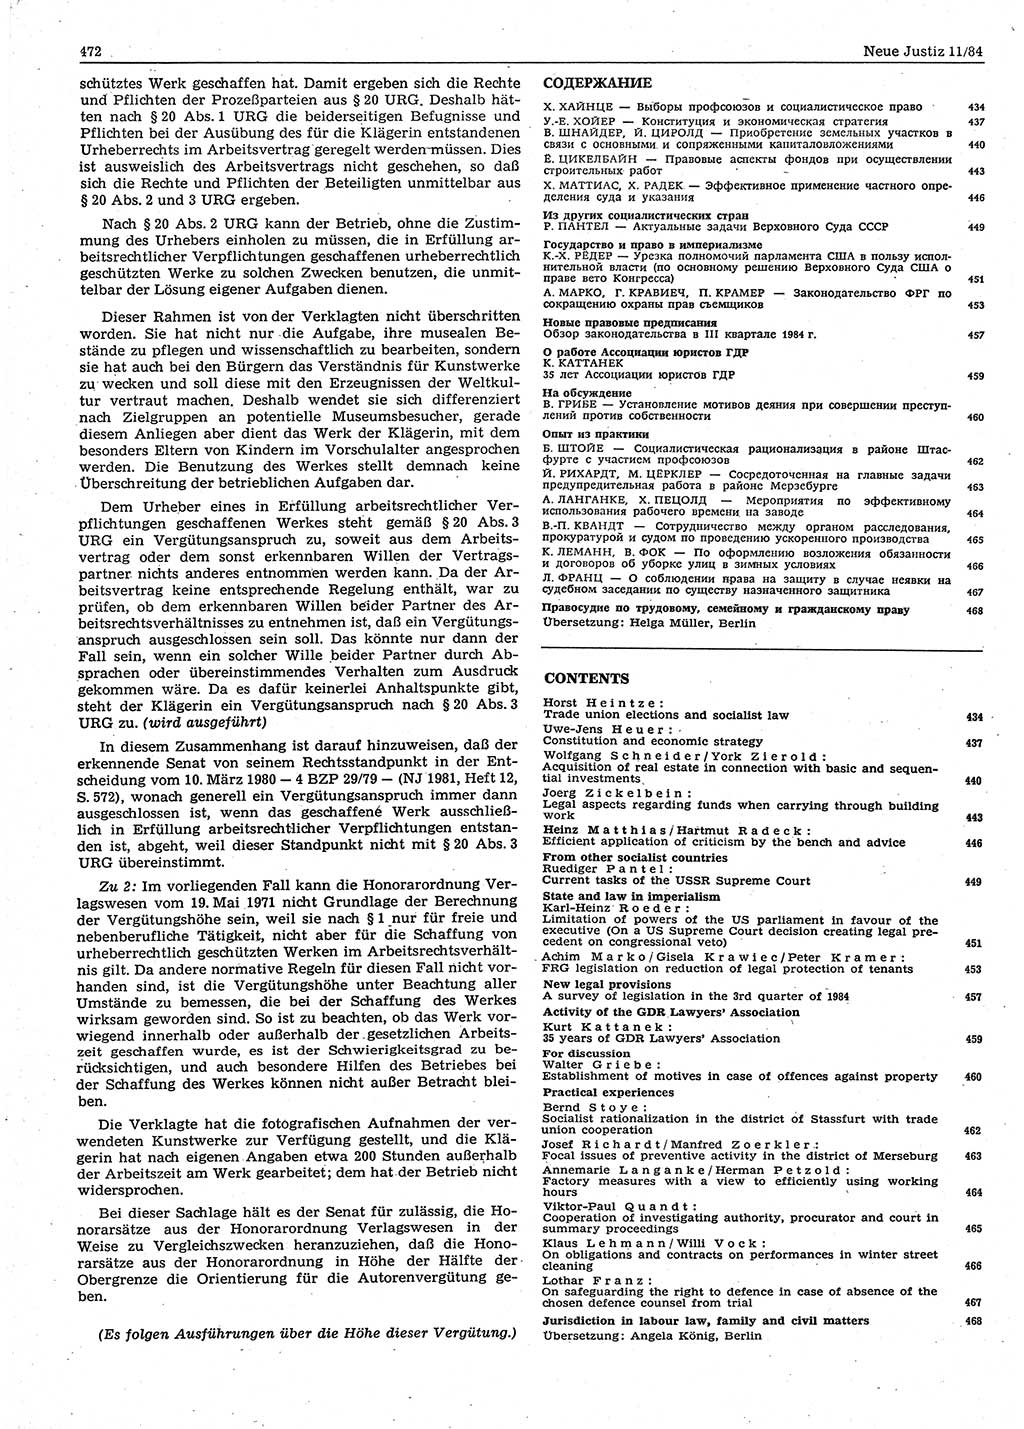 Neue Justiz (NJ), Zeitschrift für sozialistisches Recht und Gesetzlichkeit [Deutsche Demokratische Republik (DDR)], 38. Jahrgang 1984, Seite 472 (NJ DDR 1984, S. 472)